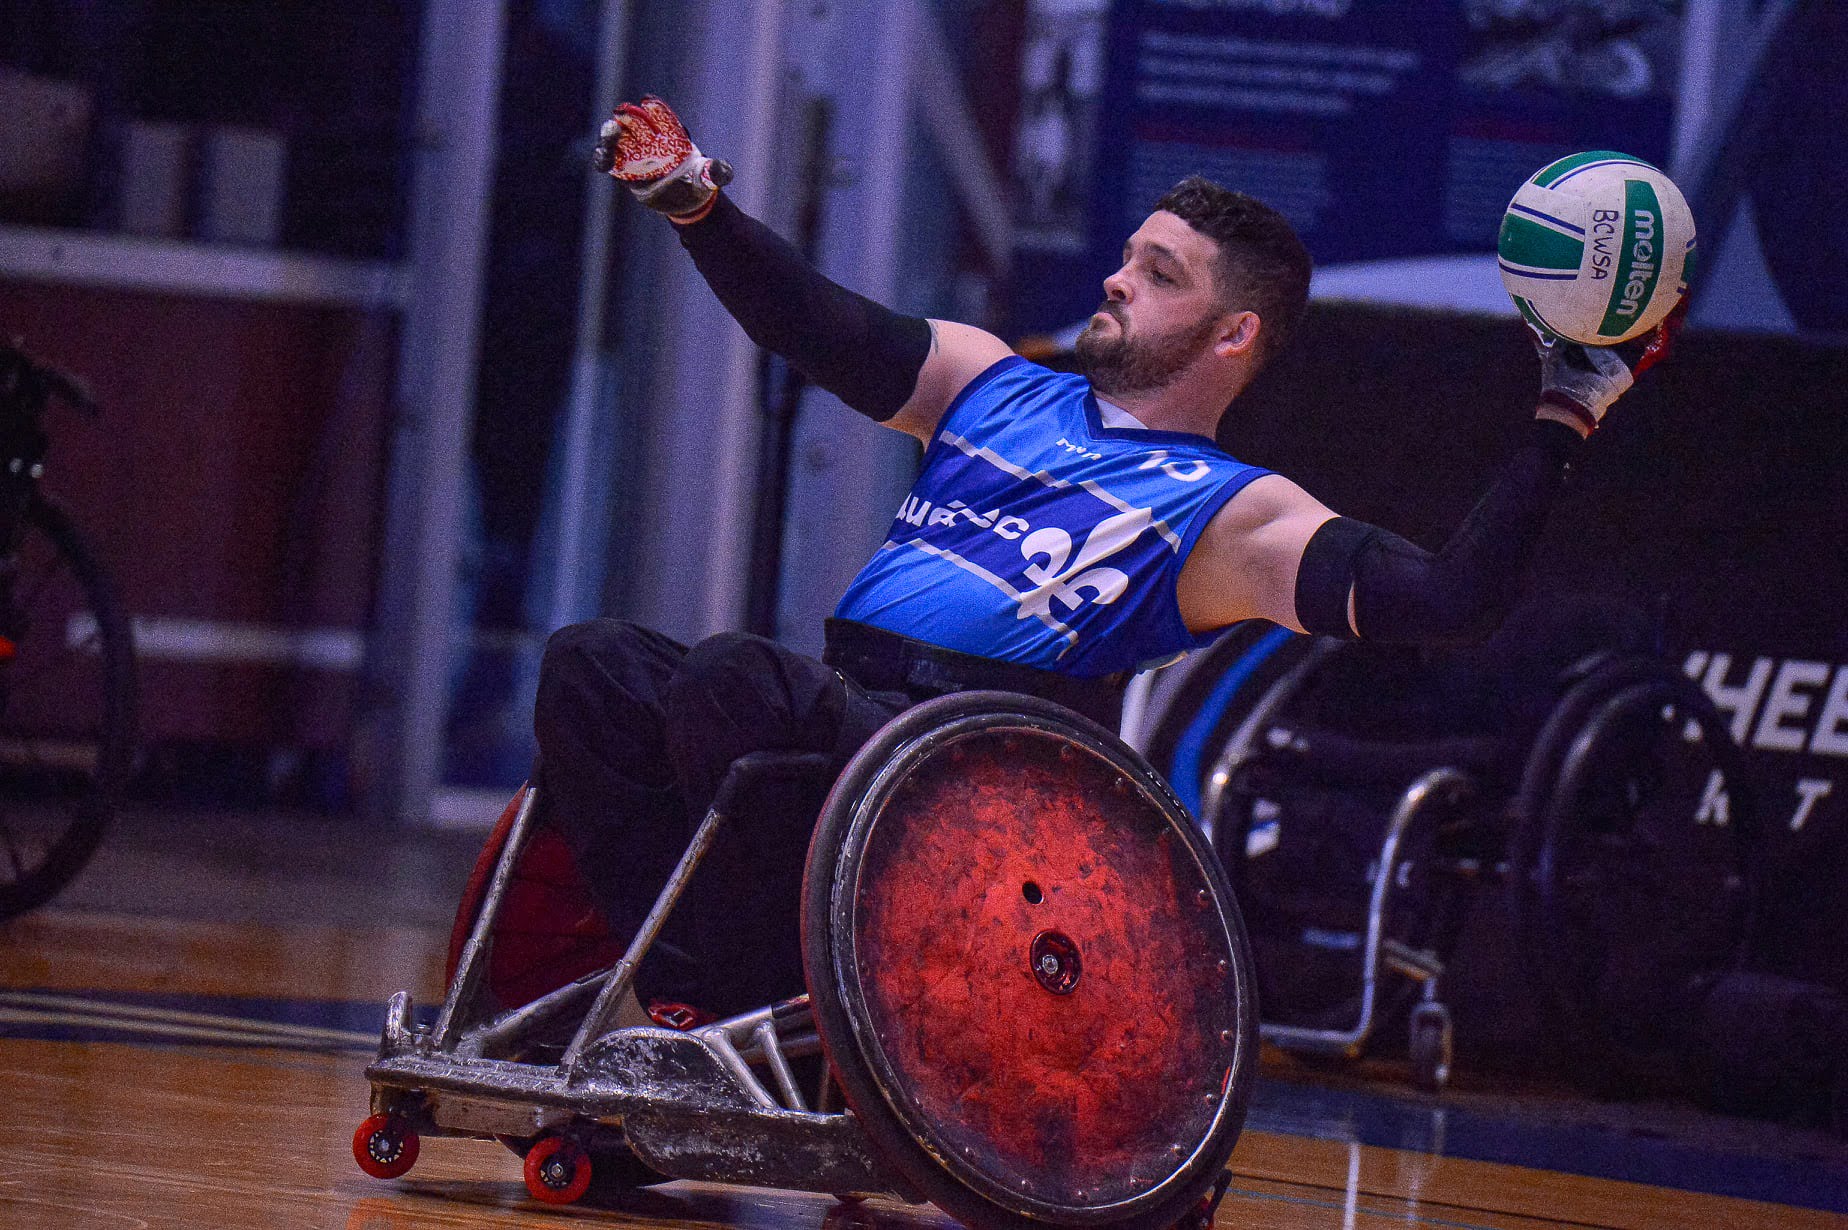 Photo BC Wheelchair Sports Association : Benjamin Perkins, tournoi invitation de rugby en fauteuil roulant de Vancouver.